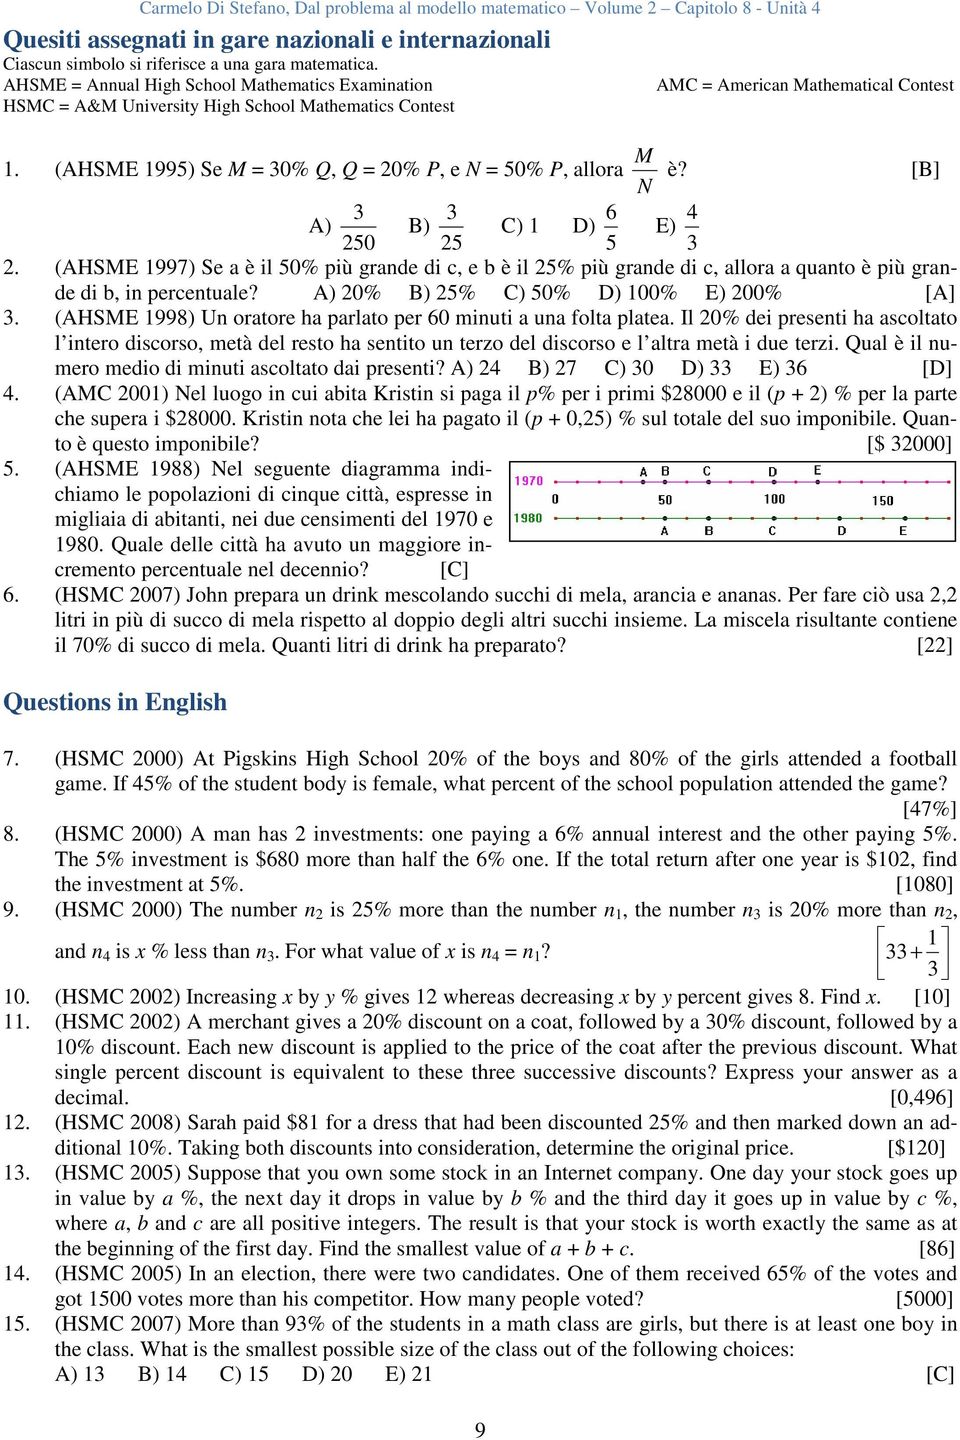 (AHSME 1995) Se M = 30% Q, Q = 20% P, e N = 50% P, allora M N è? [B] 3 A) B) 3 C) 1 D) 6 E) 4 250 25 5 3 2.